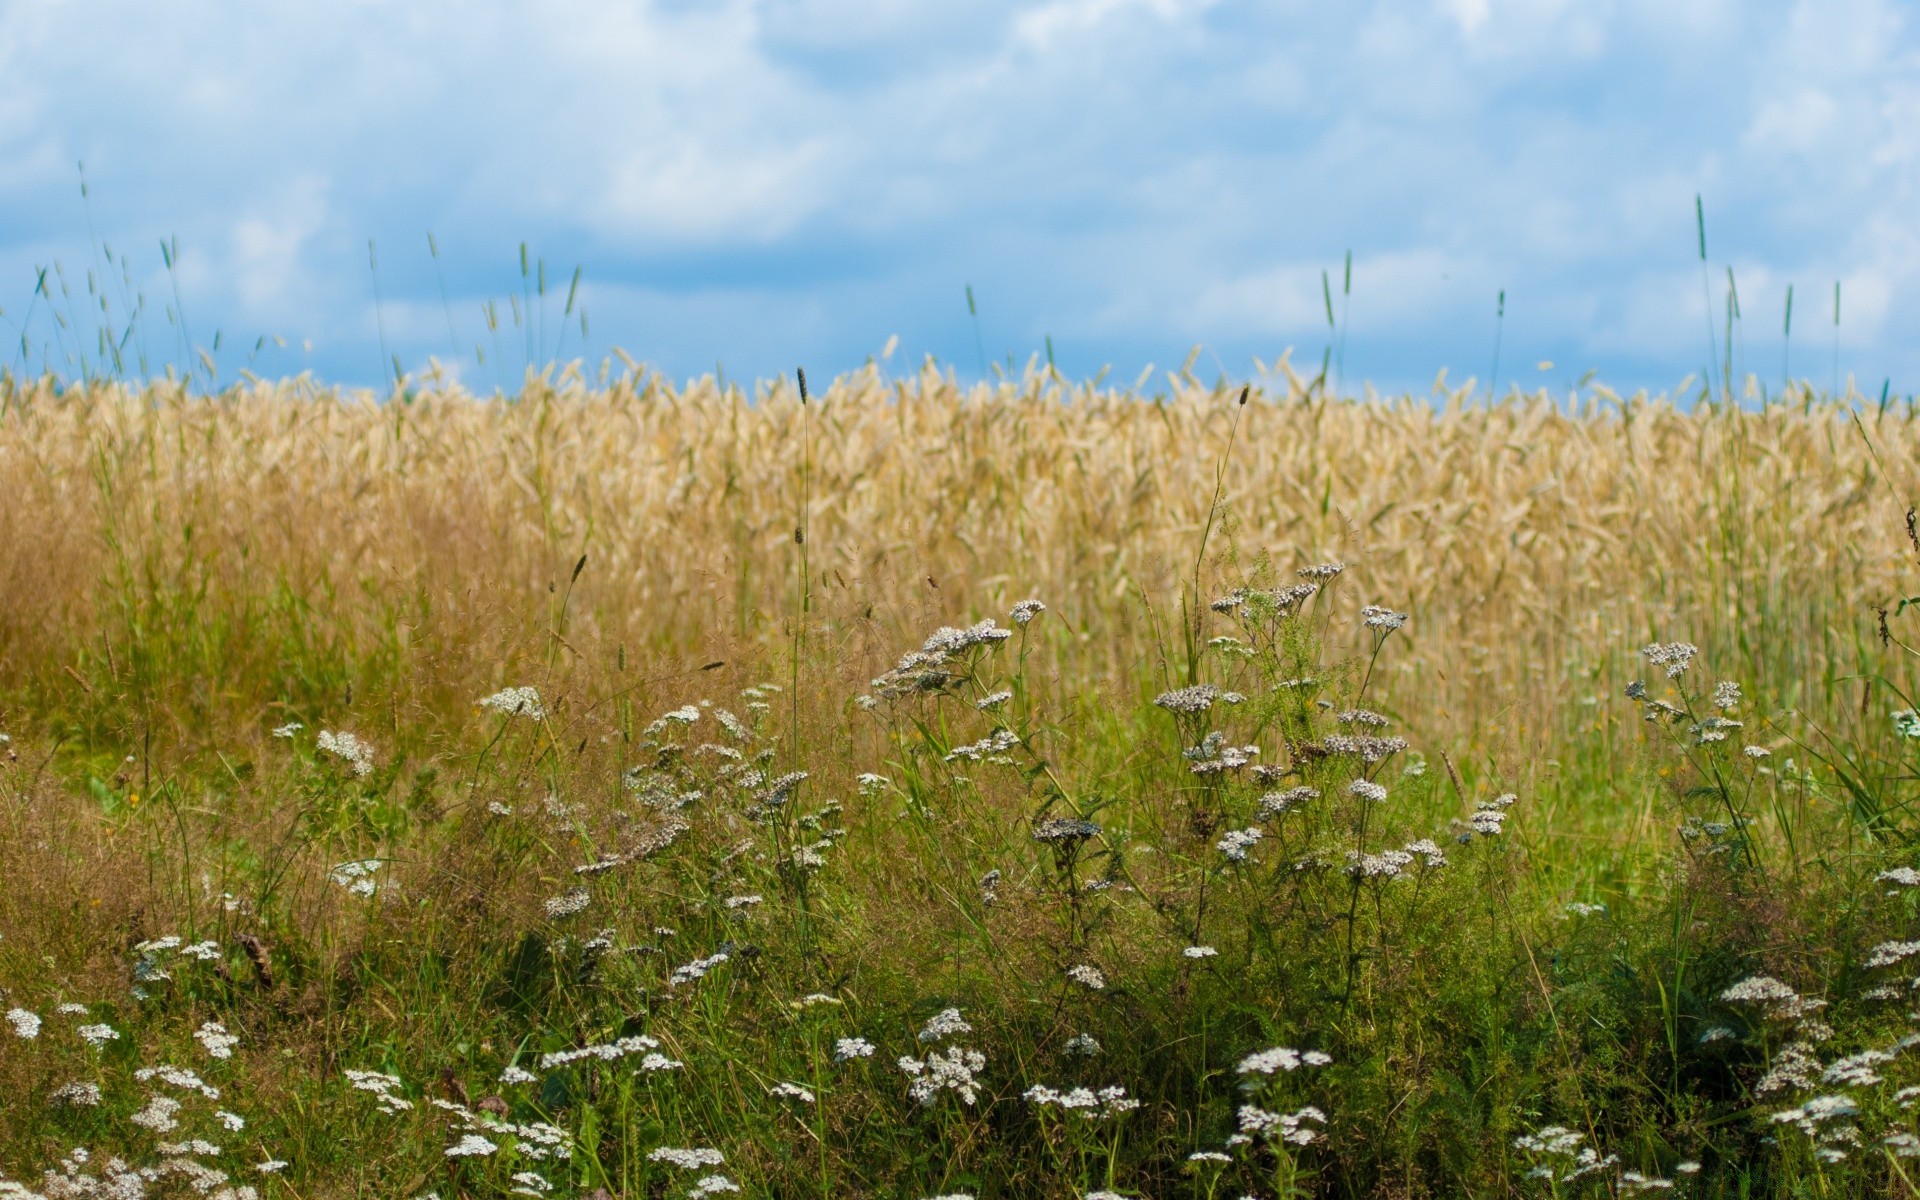 пейзажи природа лето сельских на открытом воздухе трава небо хлопья сельской местности хорошую погоду рост солнце пейзаж пастбище поле сельхозугодия яркий дикий сельское хозяйство пшеницы